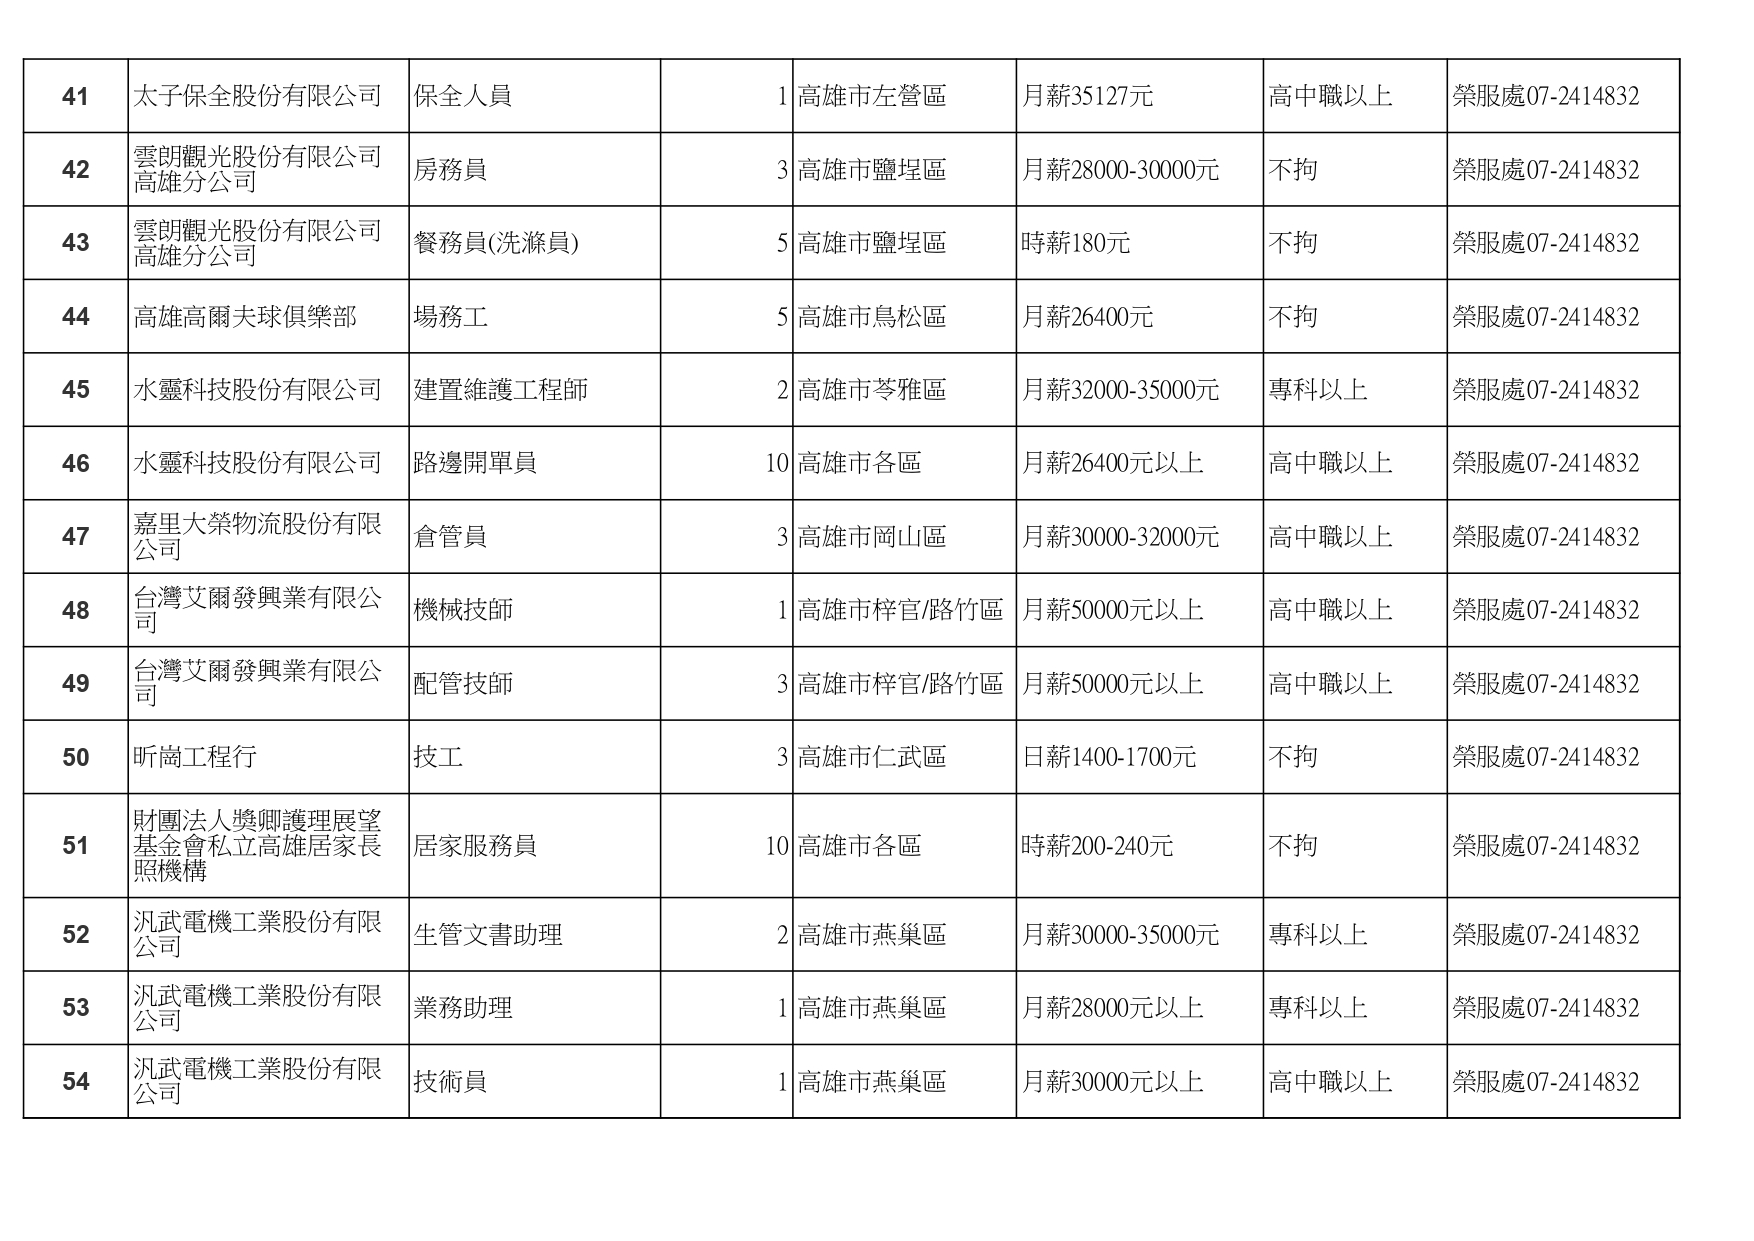 高雄榮服處-廠商職缺列表112.10.3_page-0004